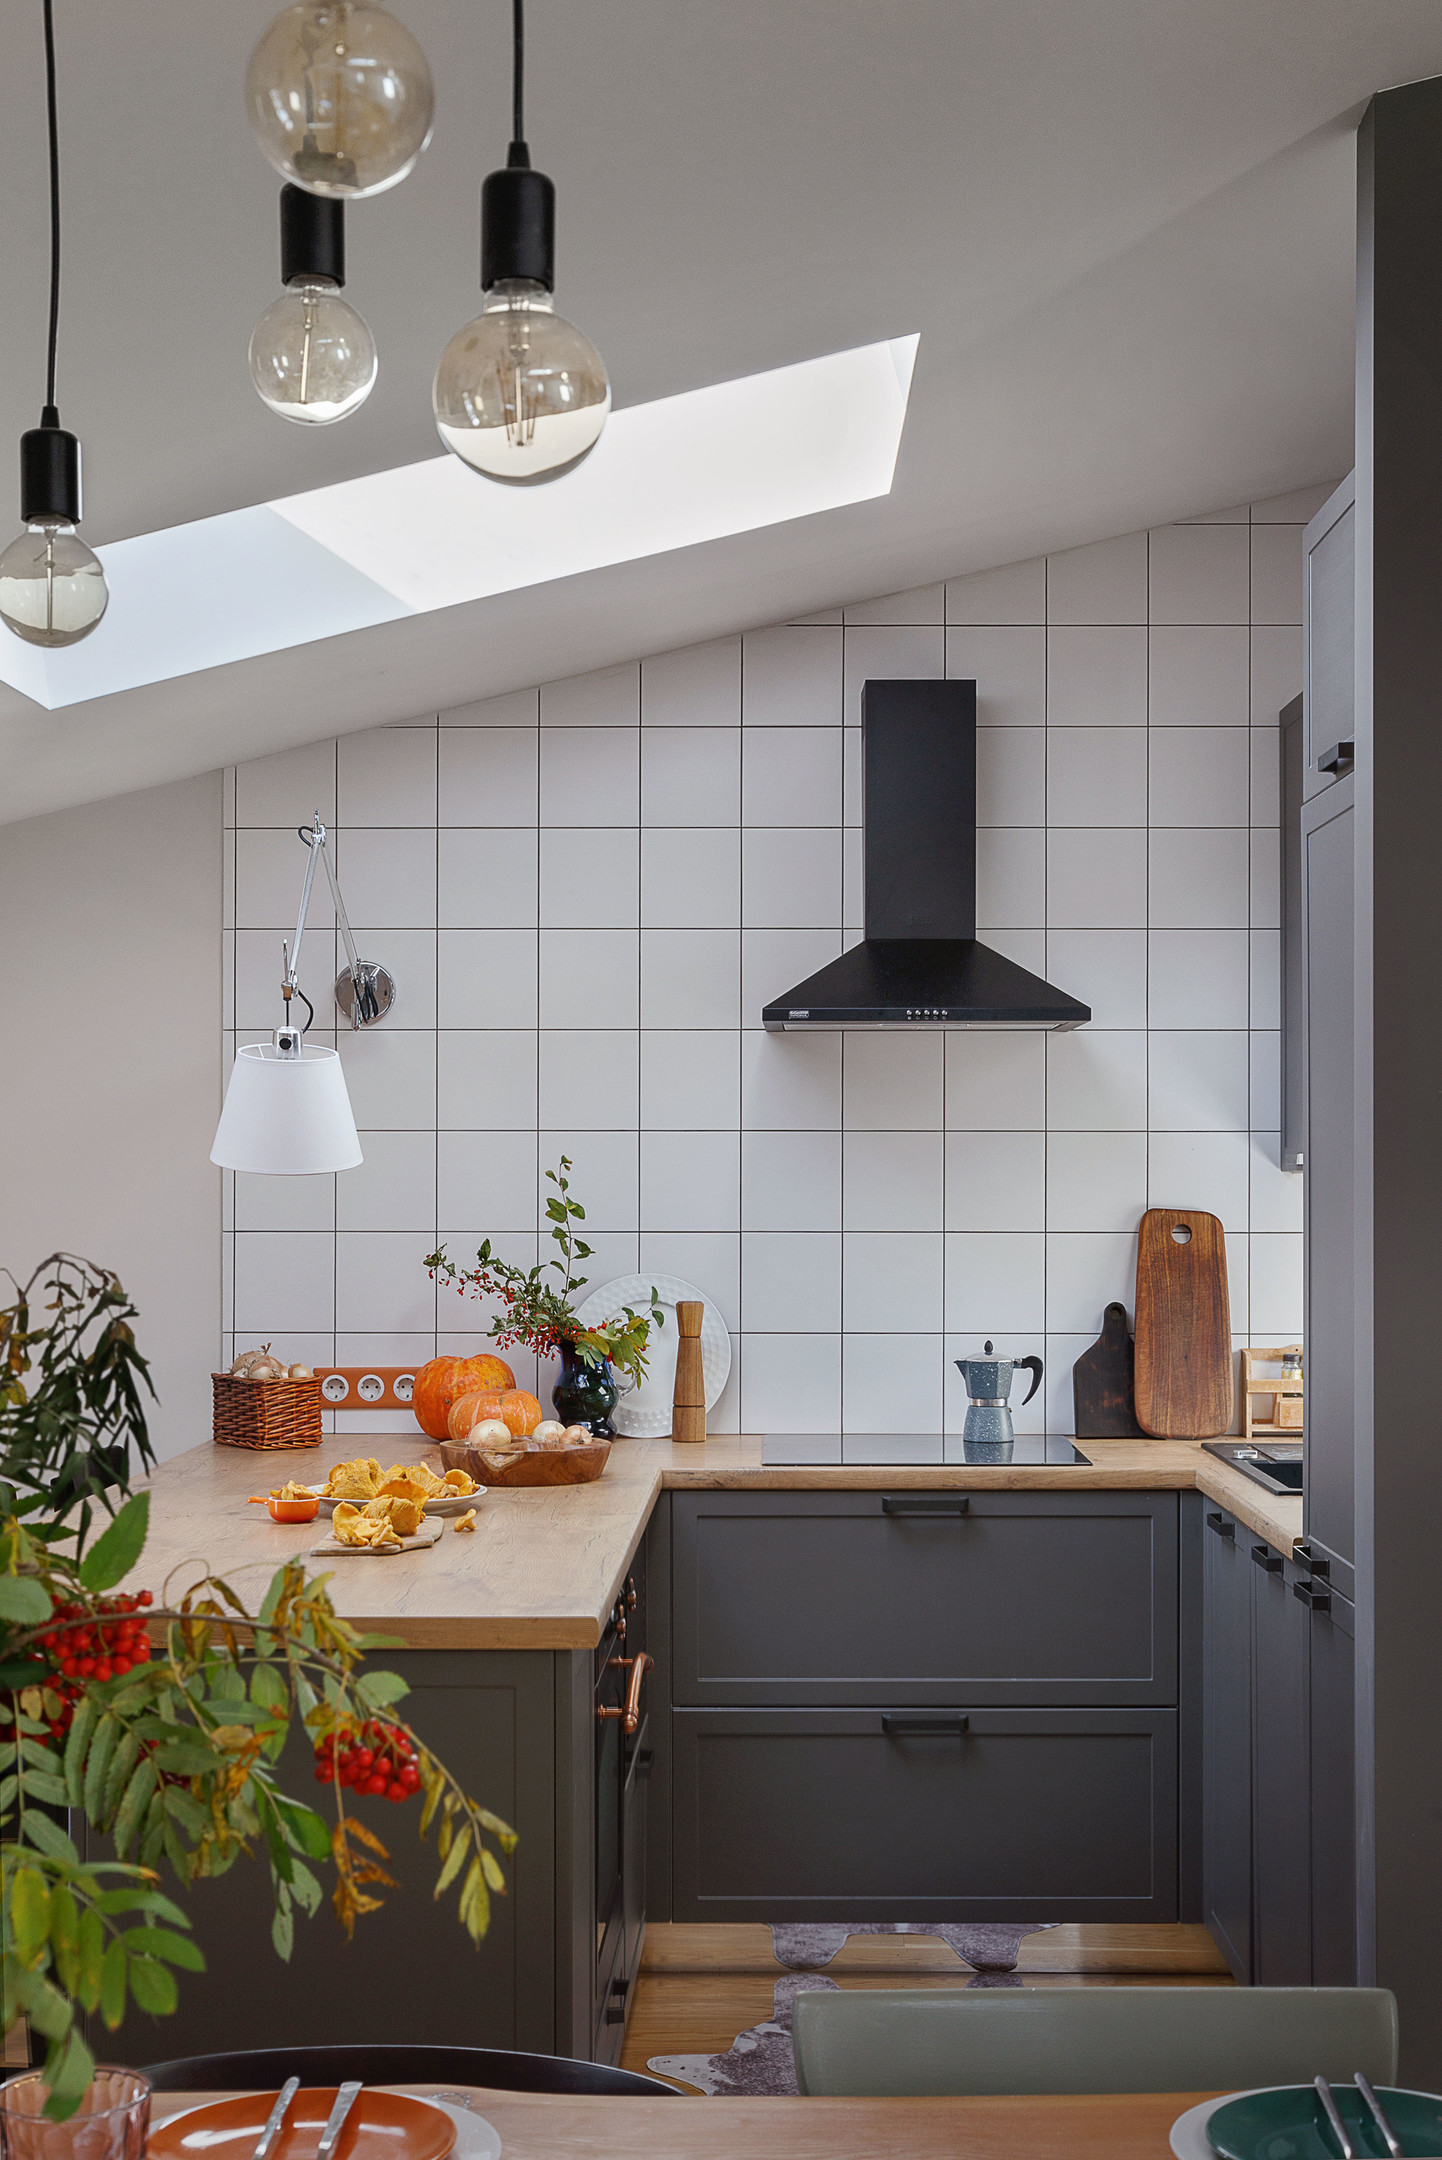 Phòng bếp nhỏ nhưng sở hữu cửa sổ mái cung cấp ánh sáng thoáng đãng cho không gian nấu nướng. Sự kết hợp giữa gạch thẻ vuông trắng và màu sơn tủ bếp xám đậm cho cái nhìn vừa cổ điển vừa hiện đại.